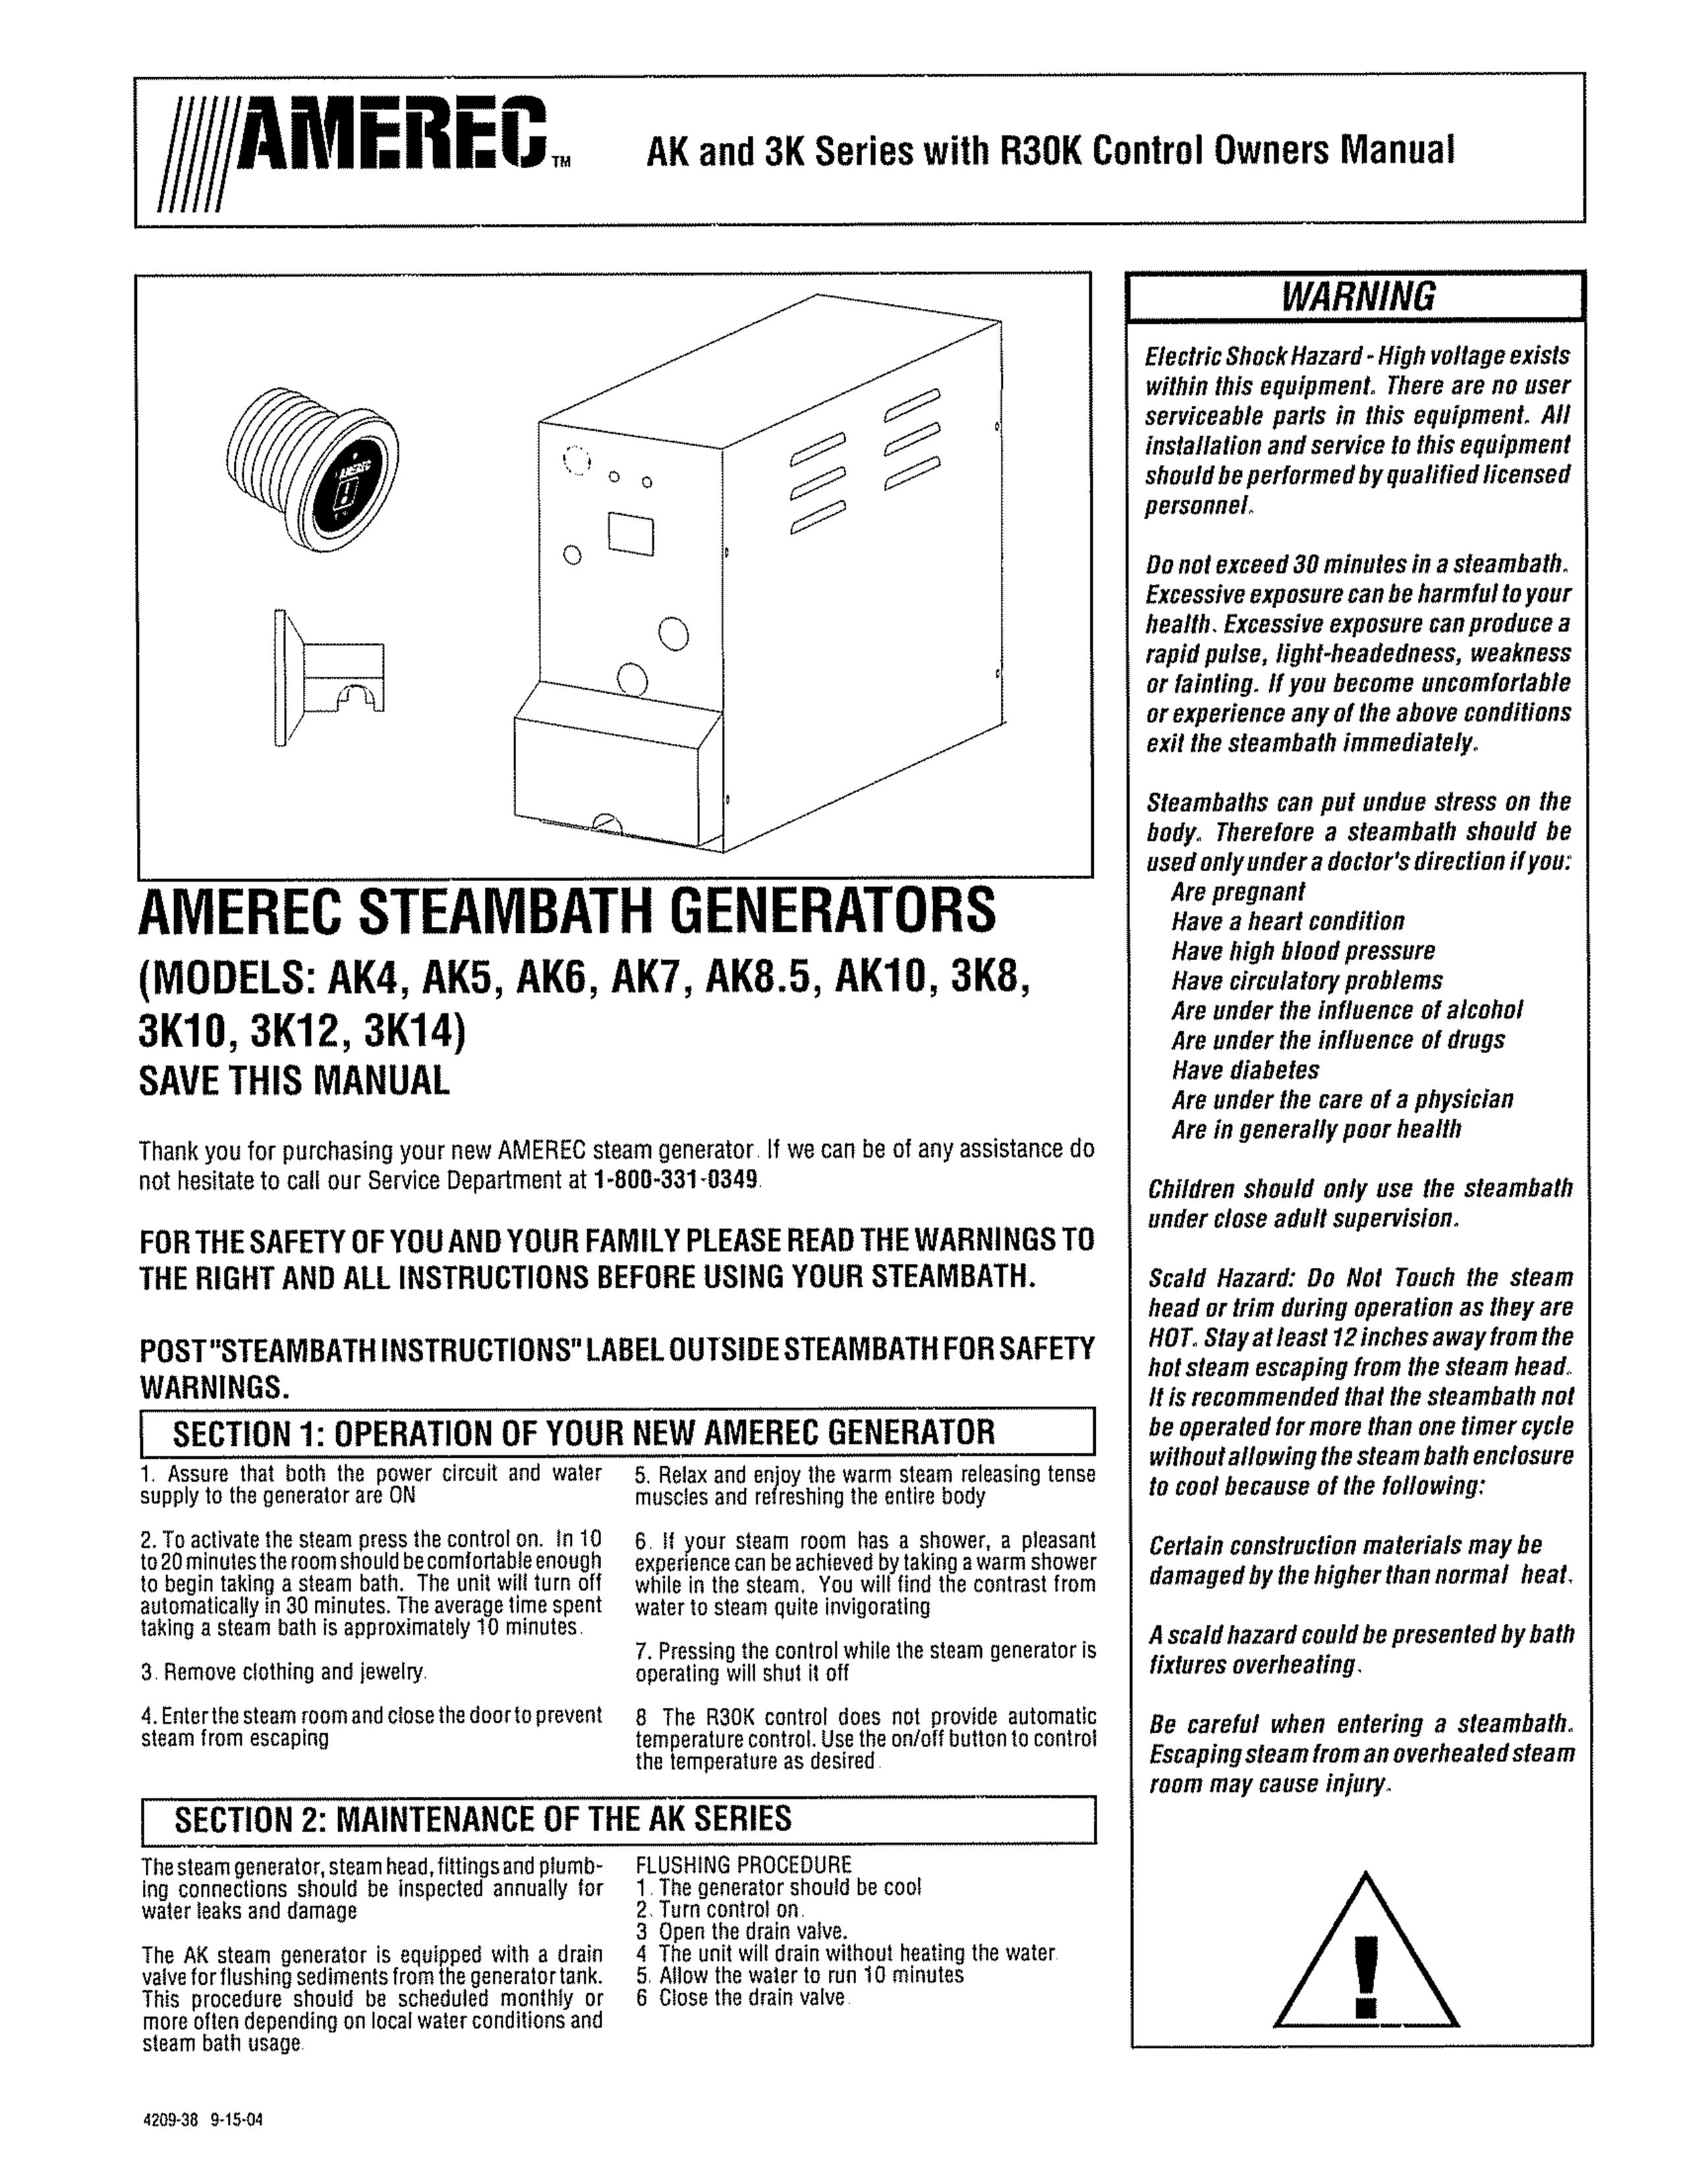 Amerec AK4 Portable Generator User Manual